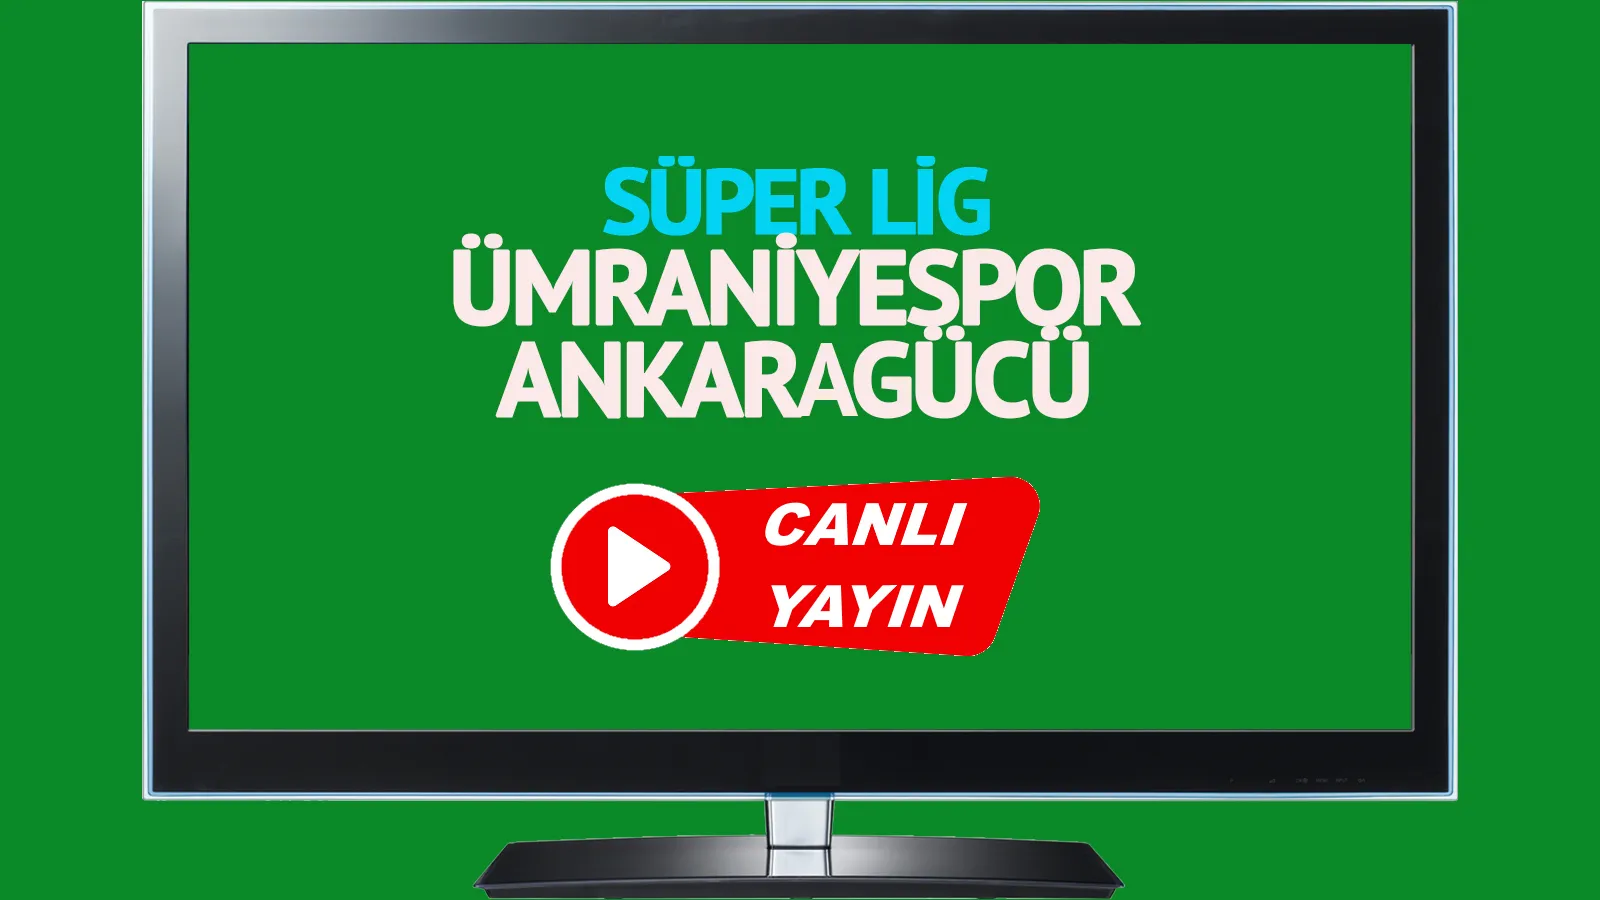 Ümraniyespor Ankaragücü canlı maç izle CANLI İZLE! 